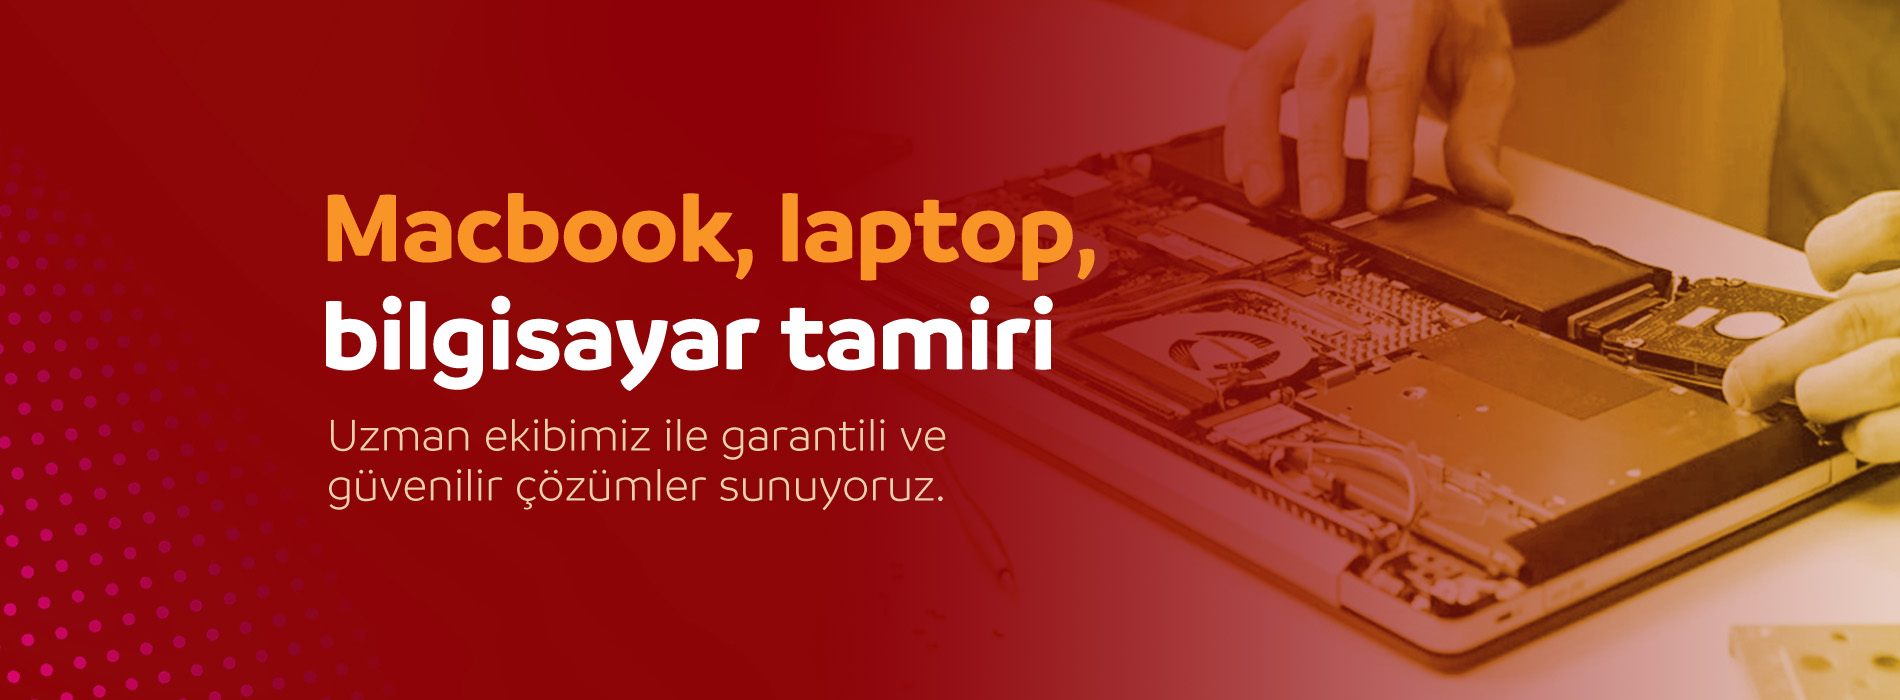 bilgisayar, macbook, laptop tamiri